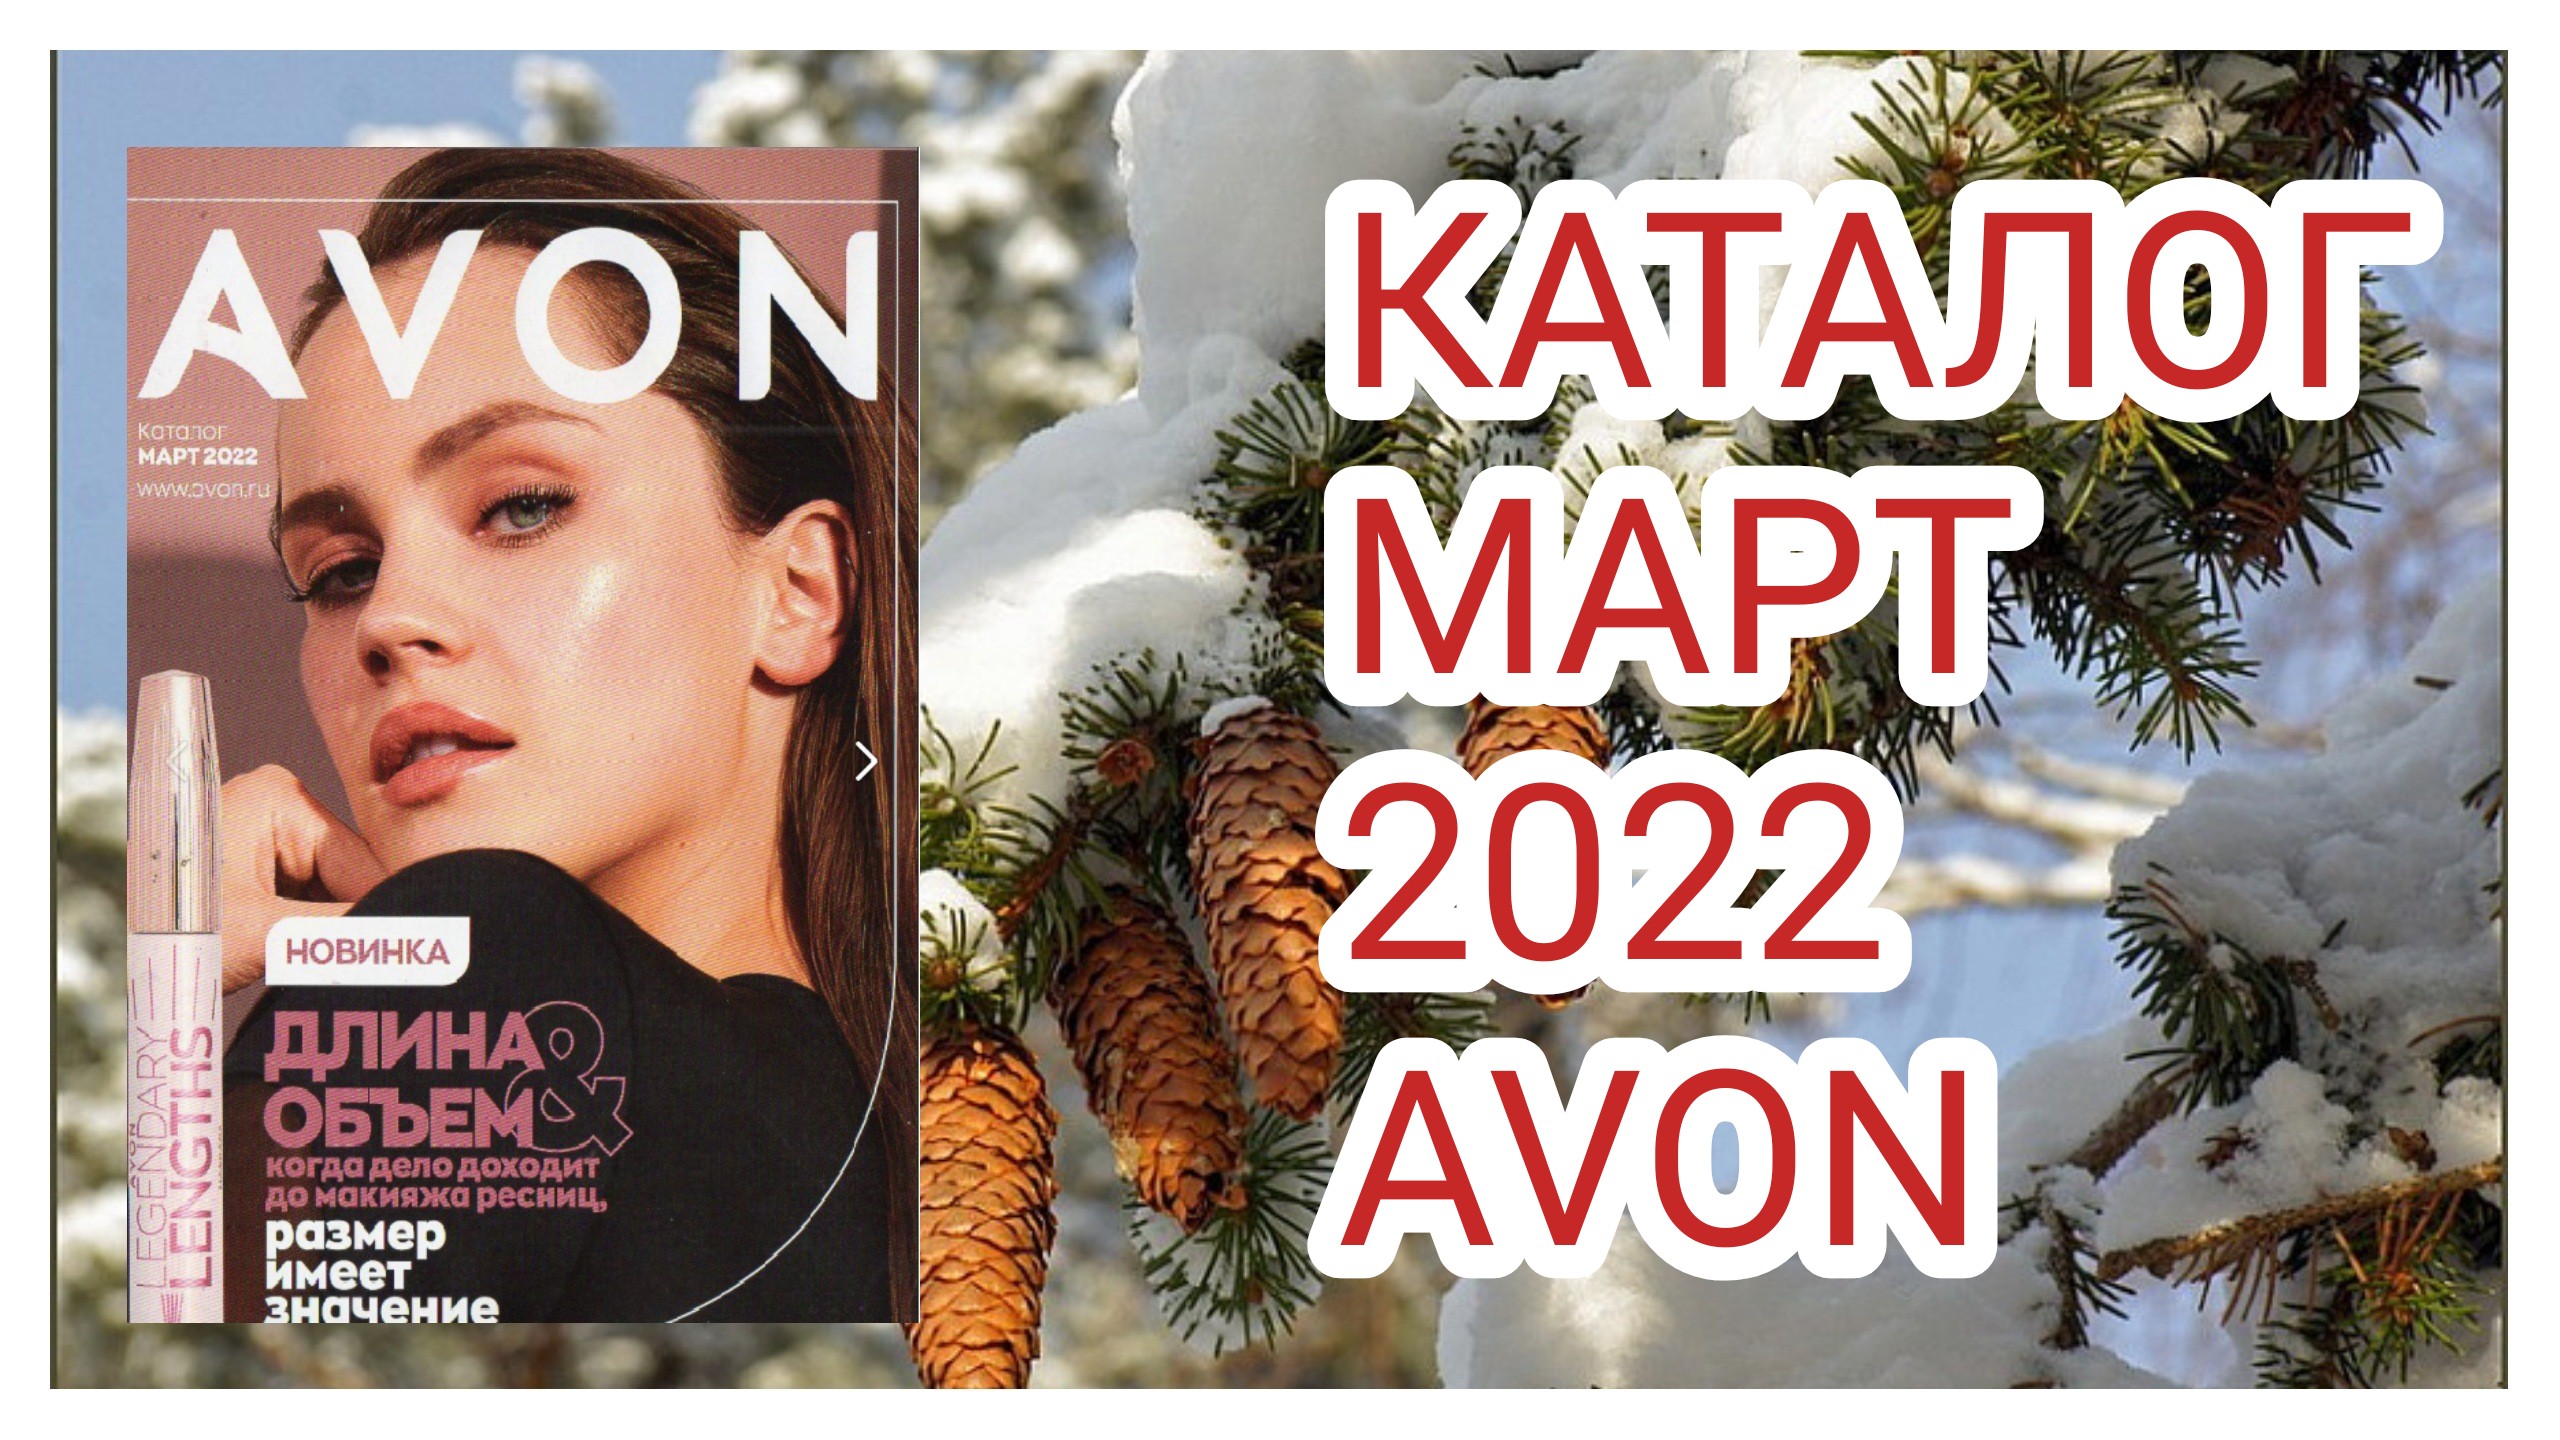 158. КАТАЛОГ МАРТ 2022 #Эйвон || catalog #Avon March-2022#обзор#3